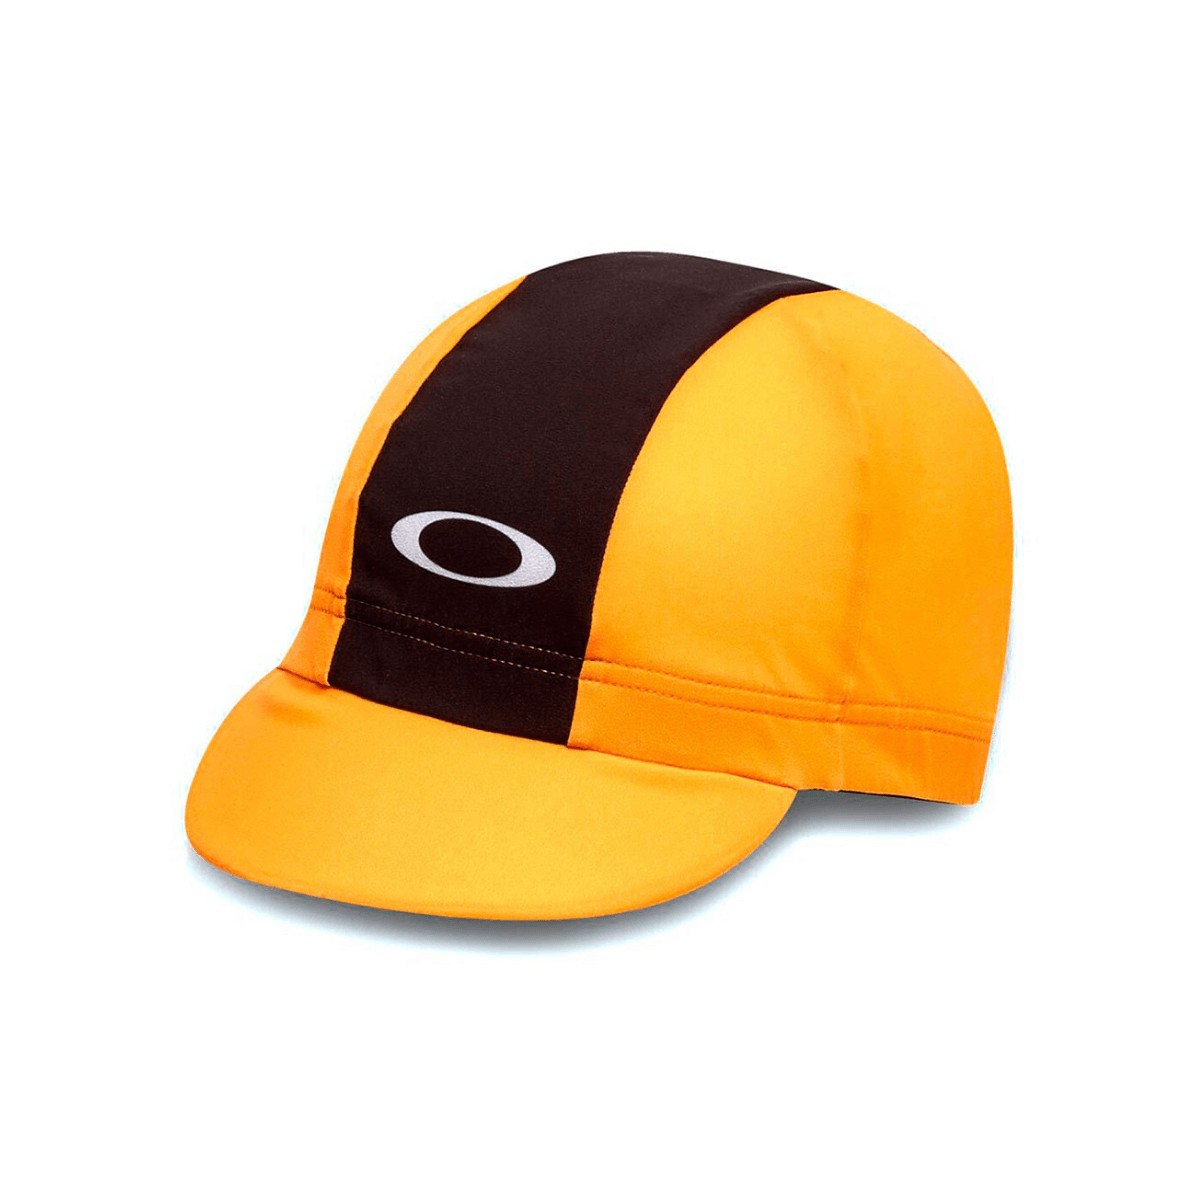 Oakley Cap 2.0 Yellow Cap, Size S/M